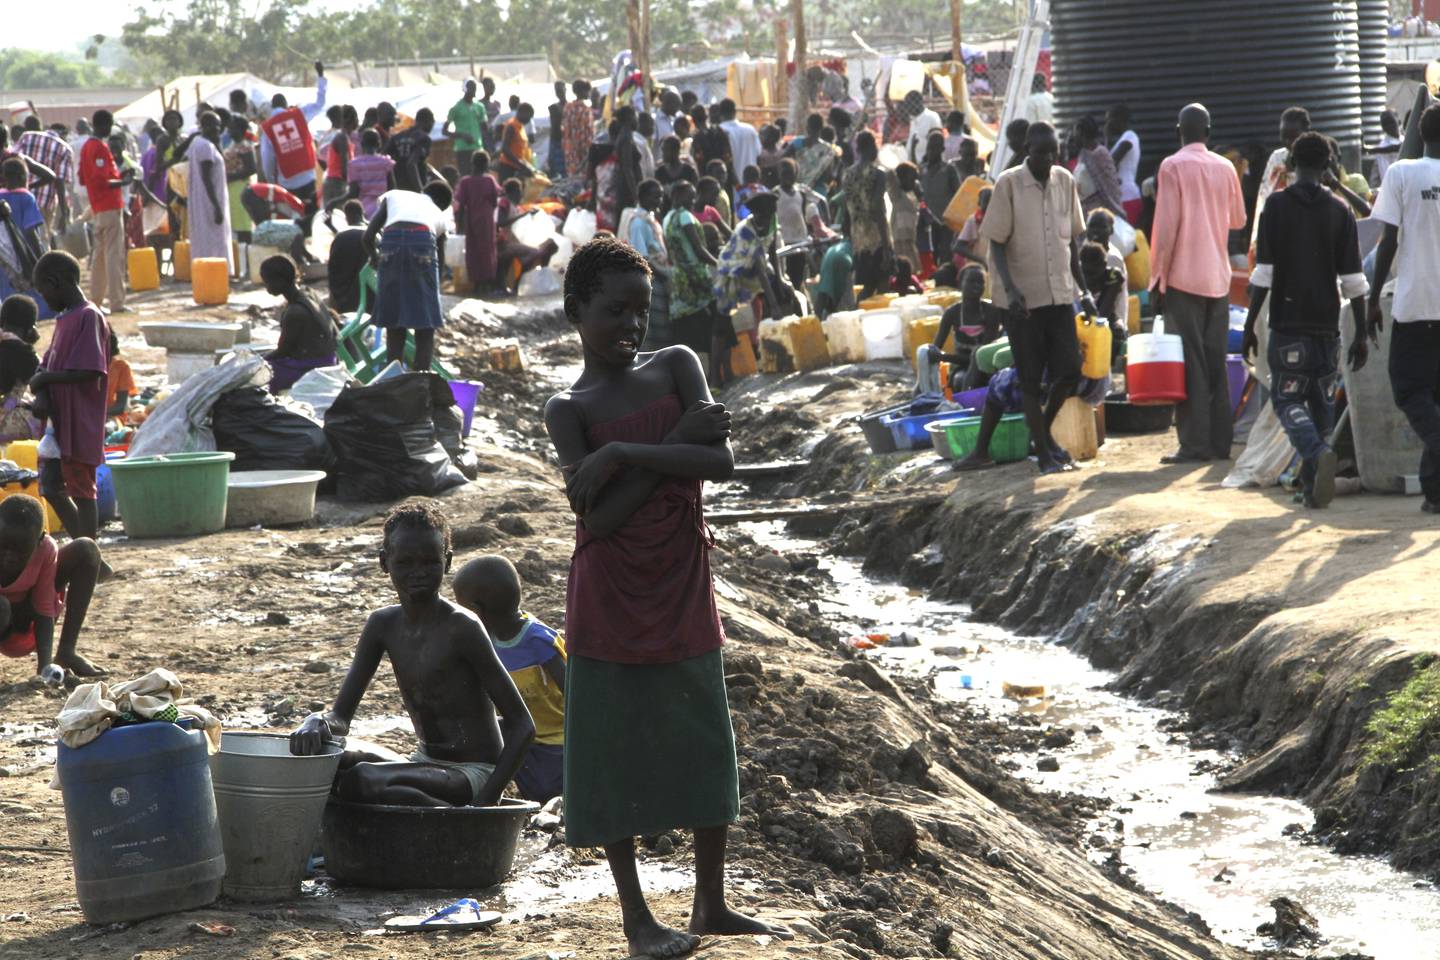 Da borgerkrigen brøt ut i 2013, søkte titusenvis tilflukt i FNs base i Juba i Sør-Sudan, under elendige forhold. Foto: Bibiana Dahle Piene / NTB